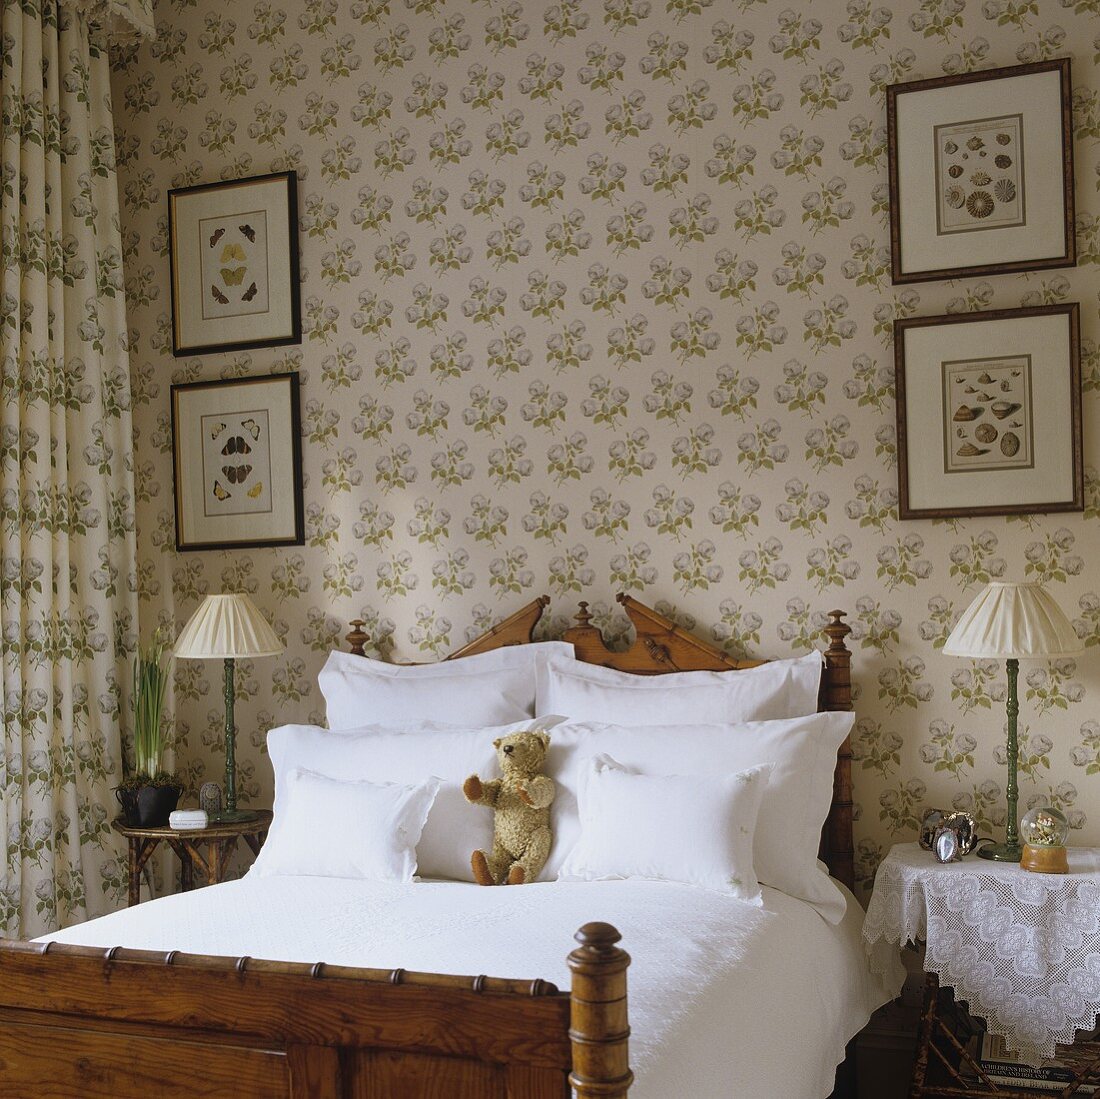 Antikes Holzbett im traditionellen englischen Schlafraum - mit Wandtapete und Vorhangstoff in gleicher Farbe und Muster ausgestattet